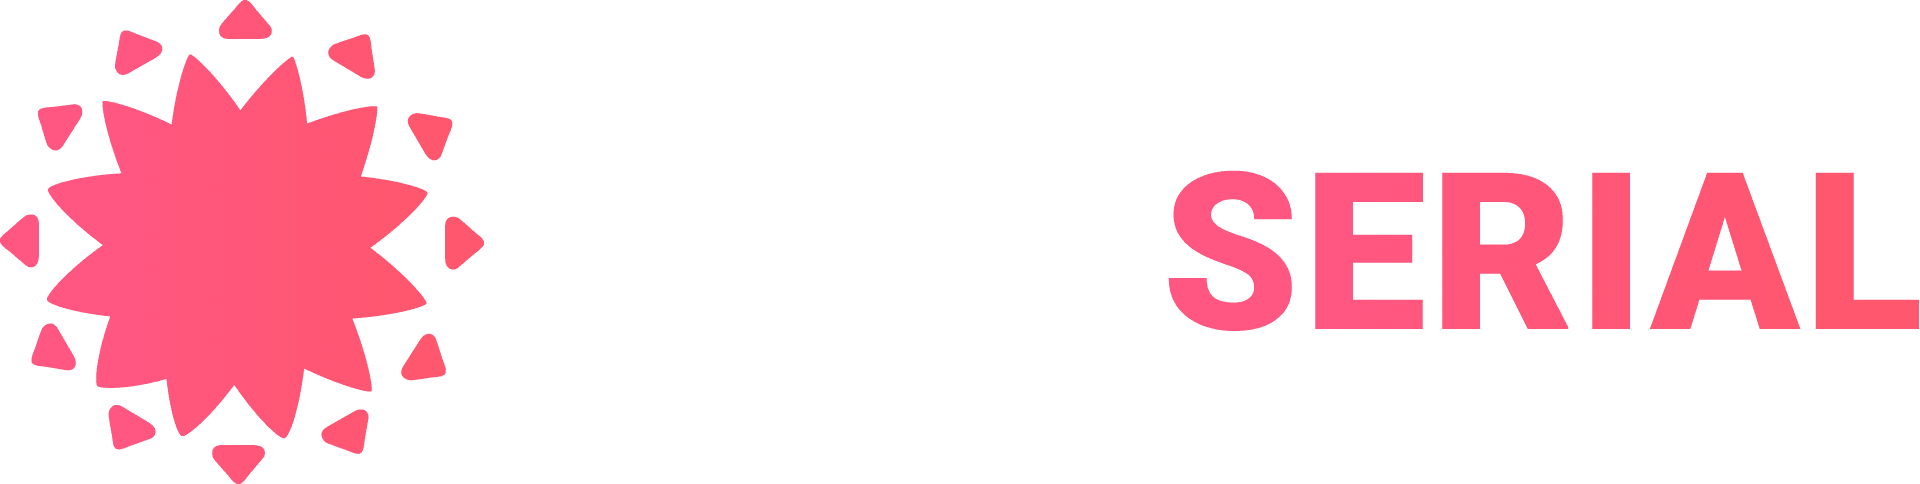 Turkserial biz